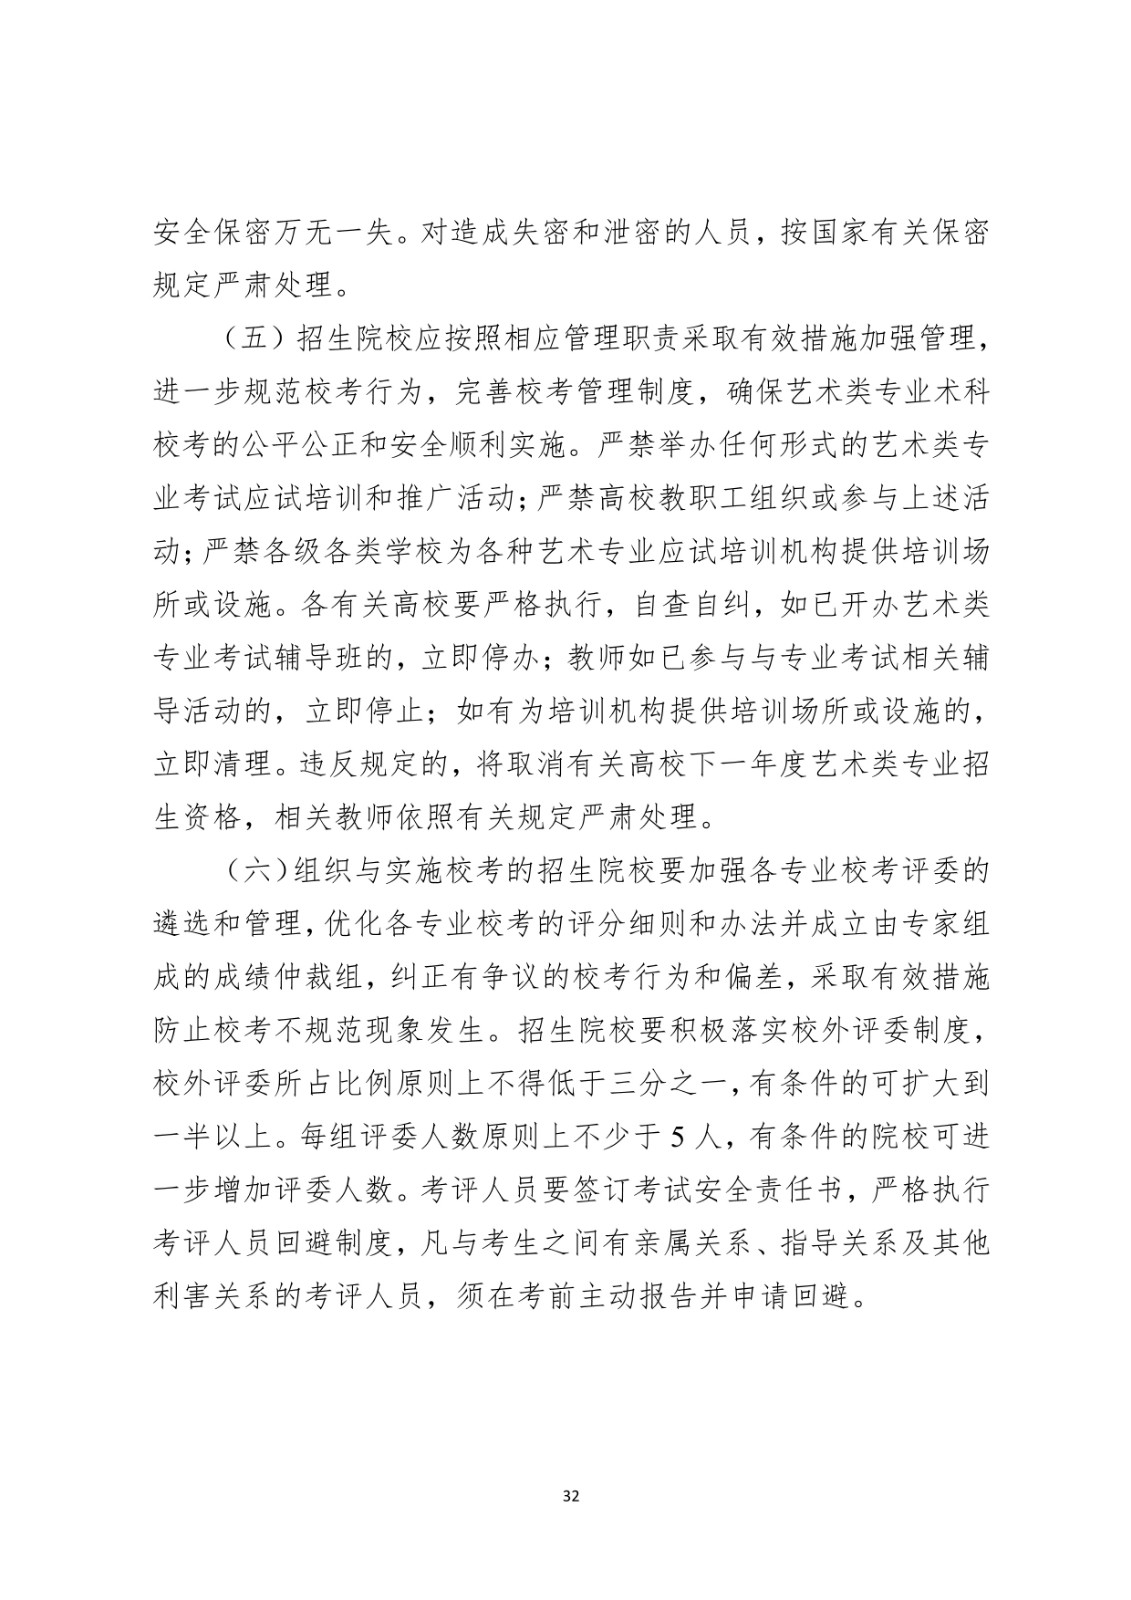 2021年广东省普通高校艺术类专业考试招生办法公布